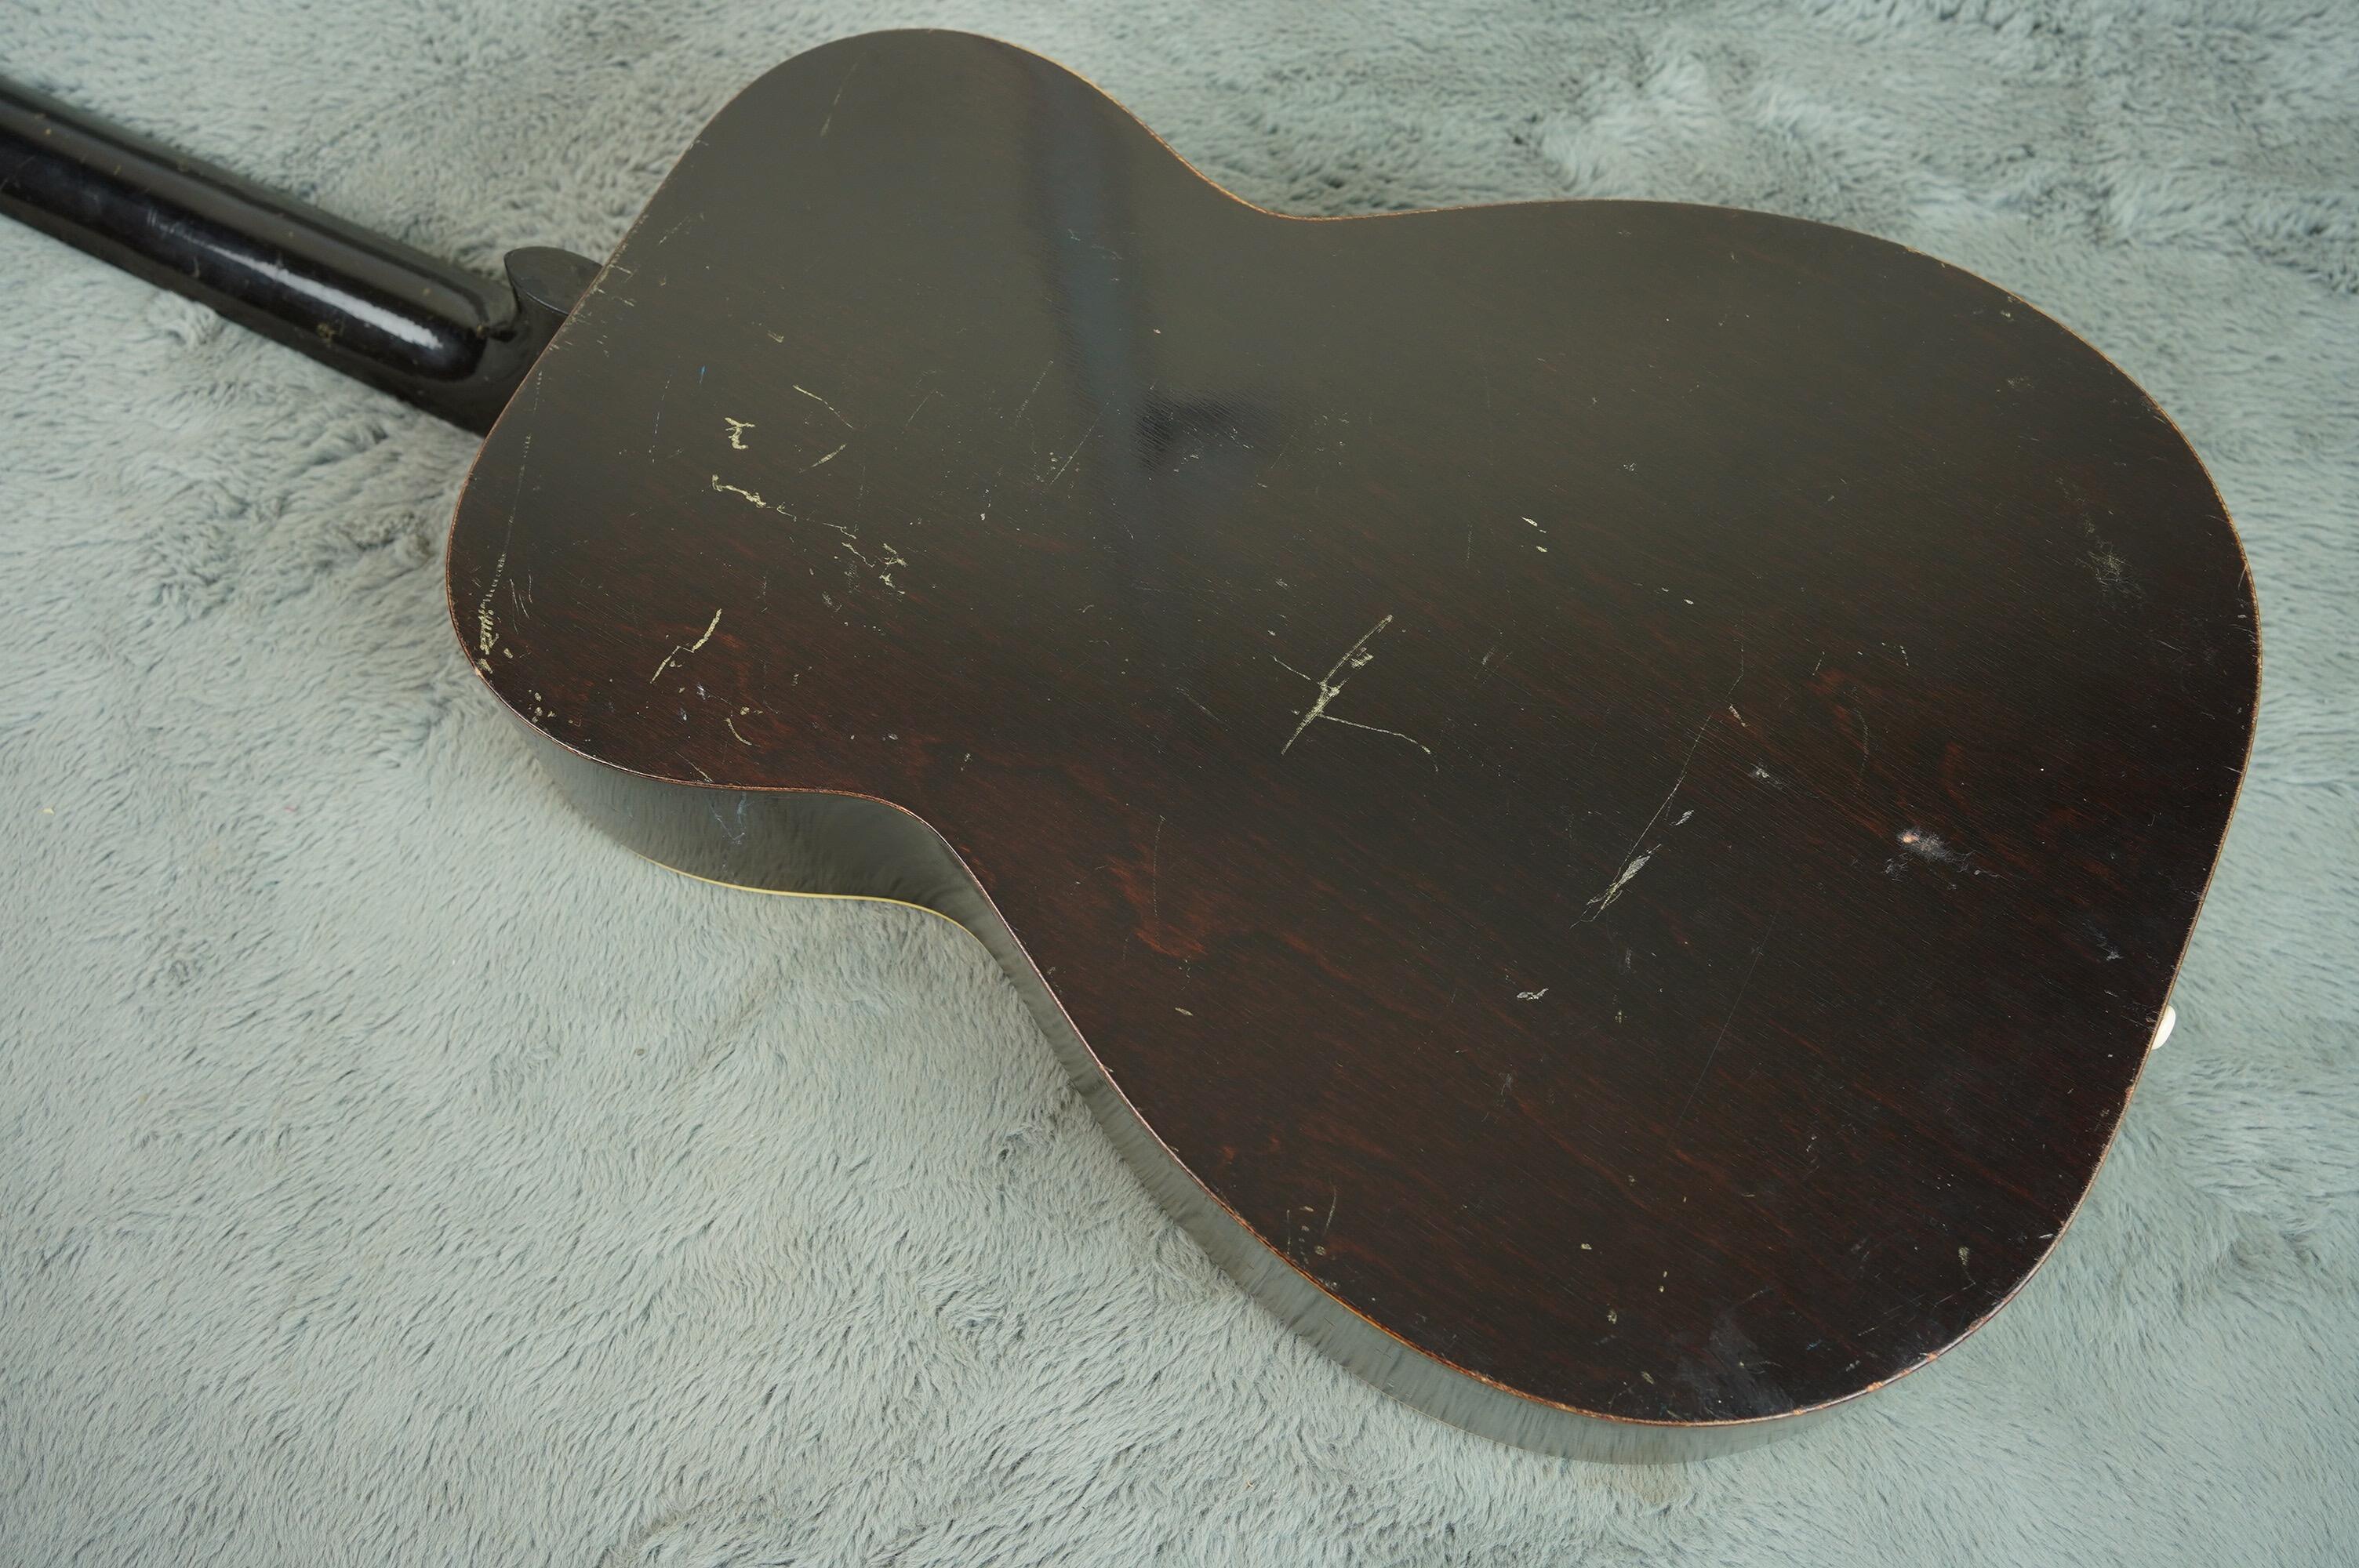 1937 Regal Resonator Guitar